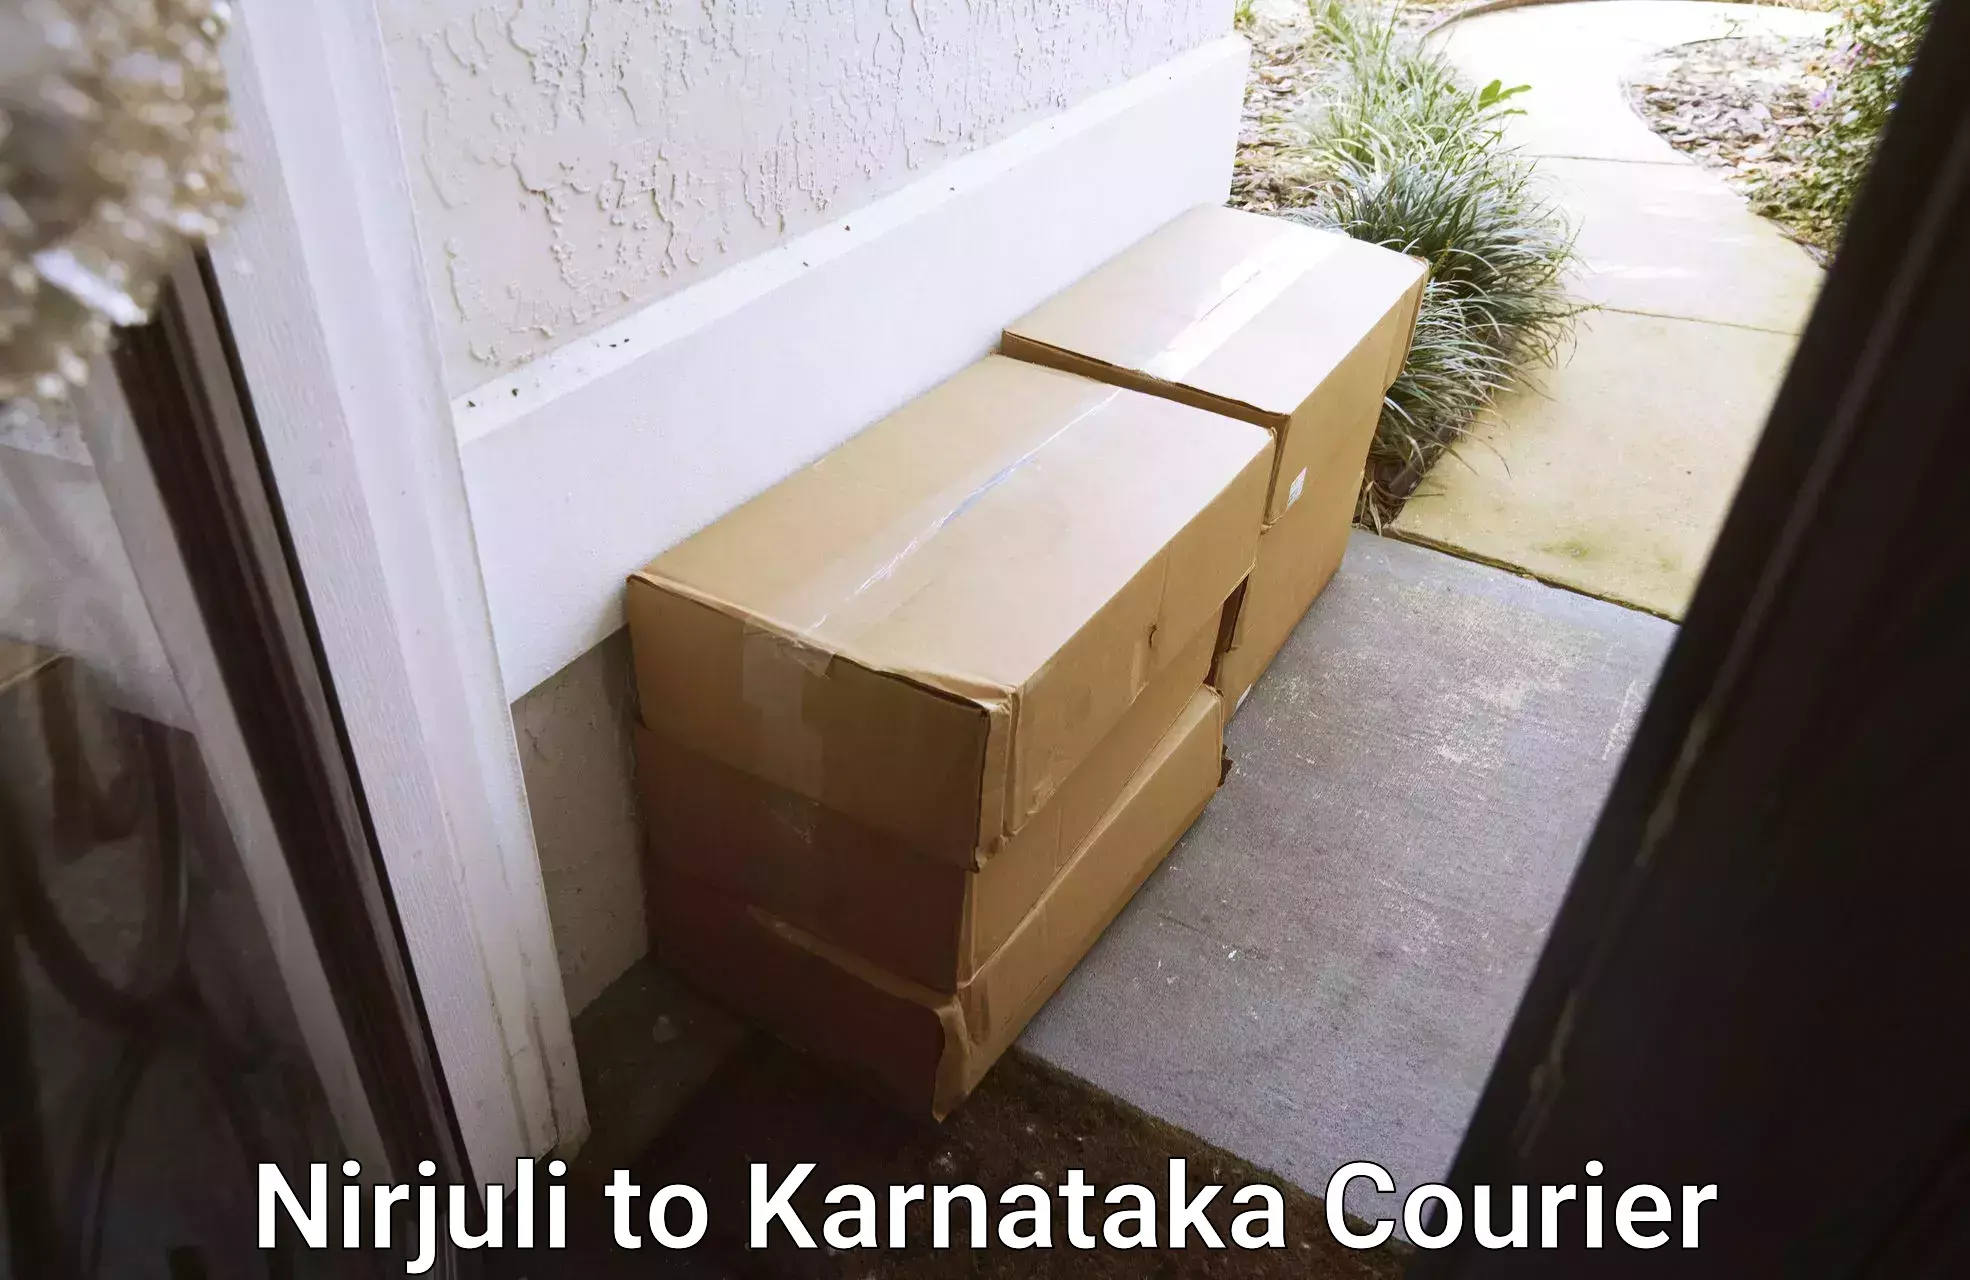 Door-to-door freight service Nirjuli to Karnataka